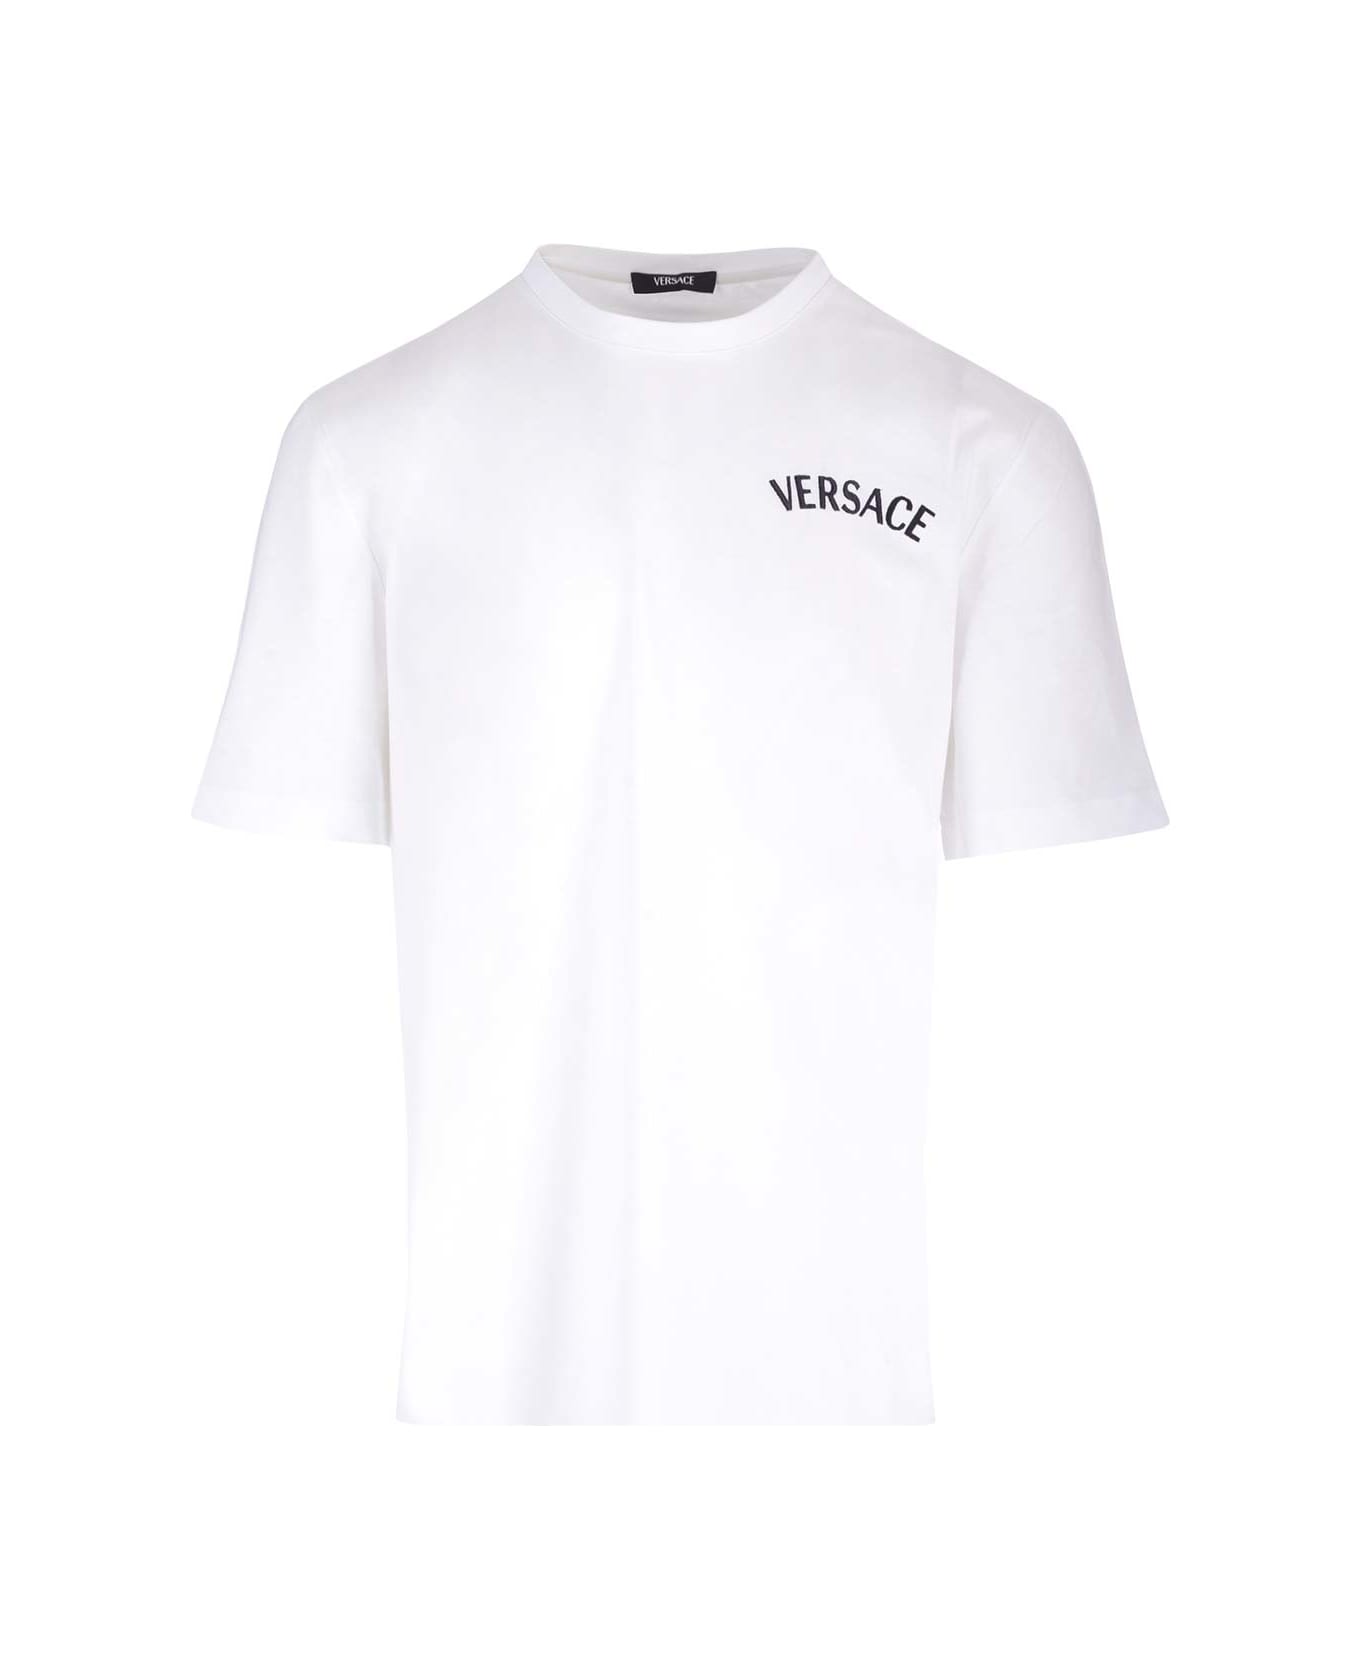 Versace T-shirt - White